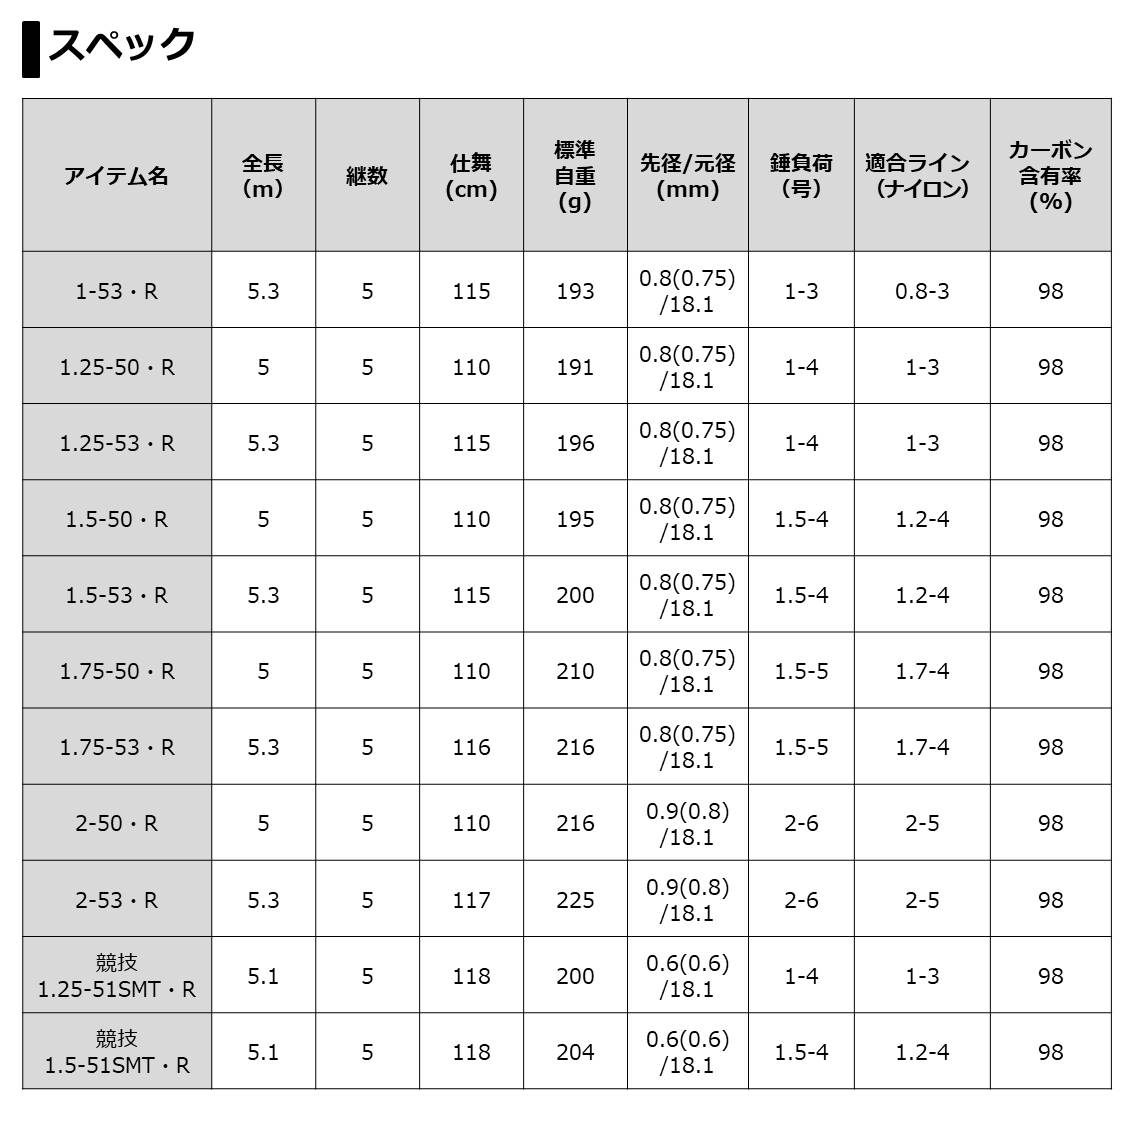 ダイワ 20 トーナメント ISO AGS 競技1.25-51 SMT・R